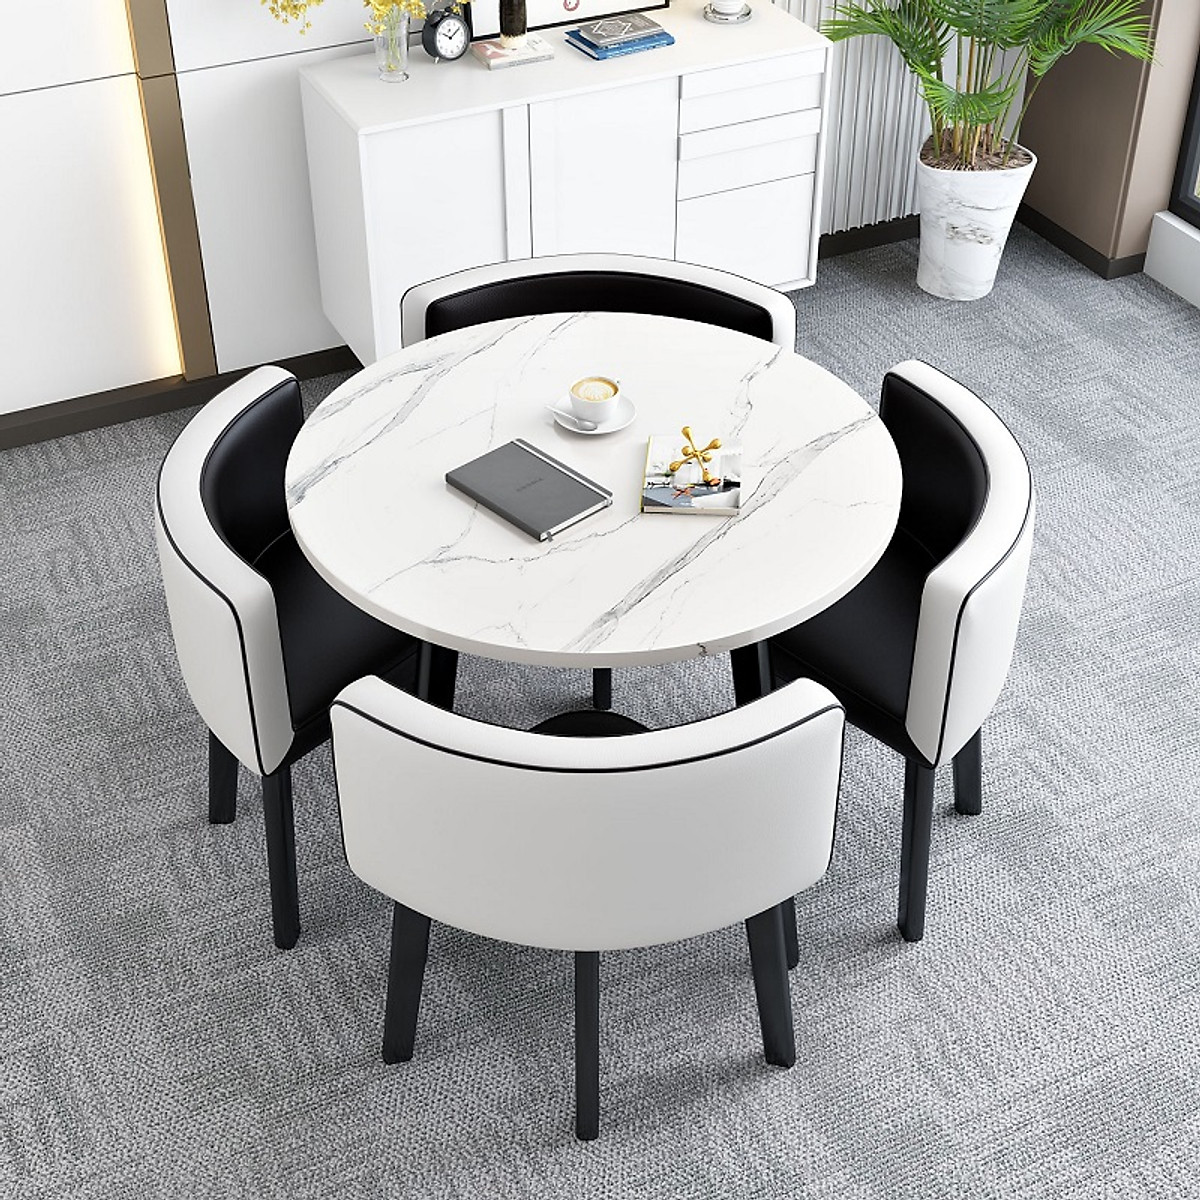 Bộ bàn ăn mặt vân đá sẽ làm cho căn phòng ăn của bạn trông sang trọng và đẳng cấp hơn. Với mặt đá tự nhiên và thiết kế tinh tế, bộ bàn ăn này sẽ trở thành một tác phẩm nghệ thuật trong căn phòng của bạn.